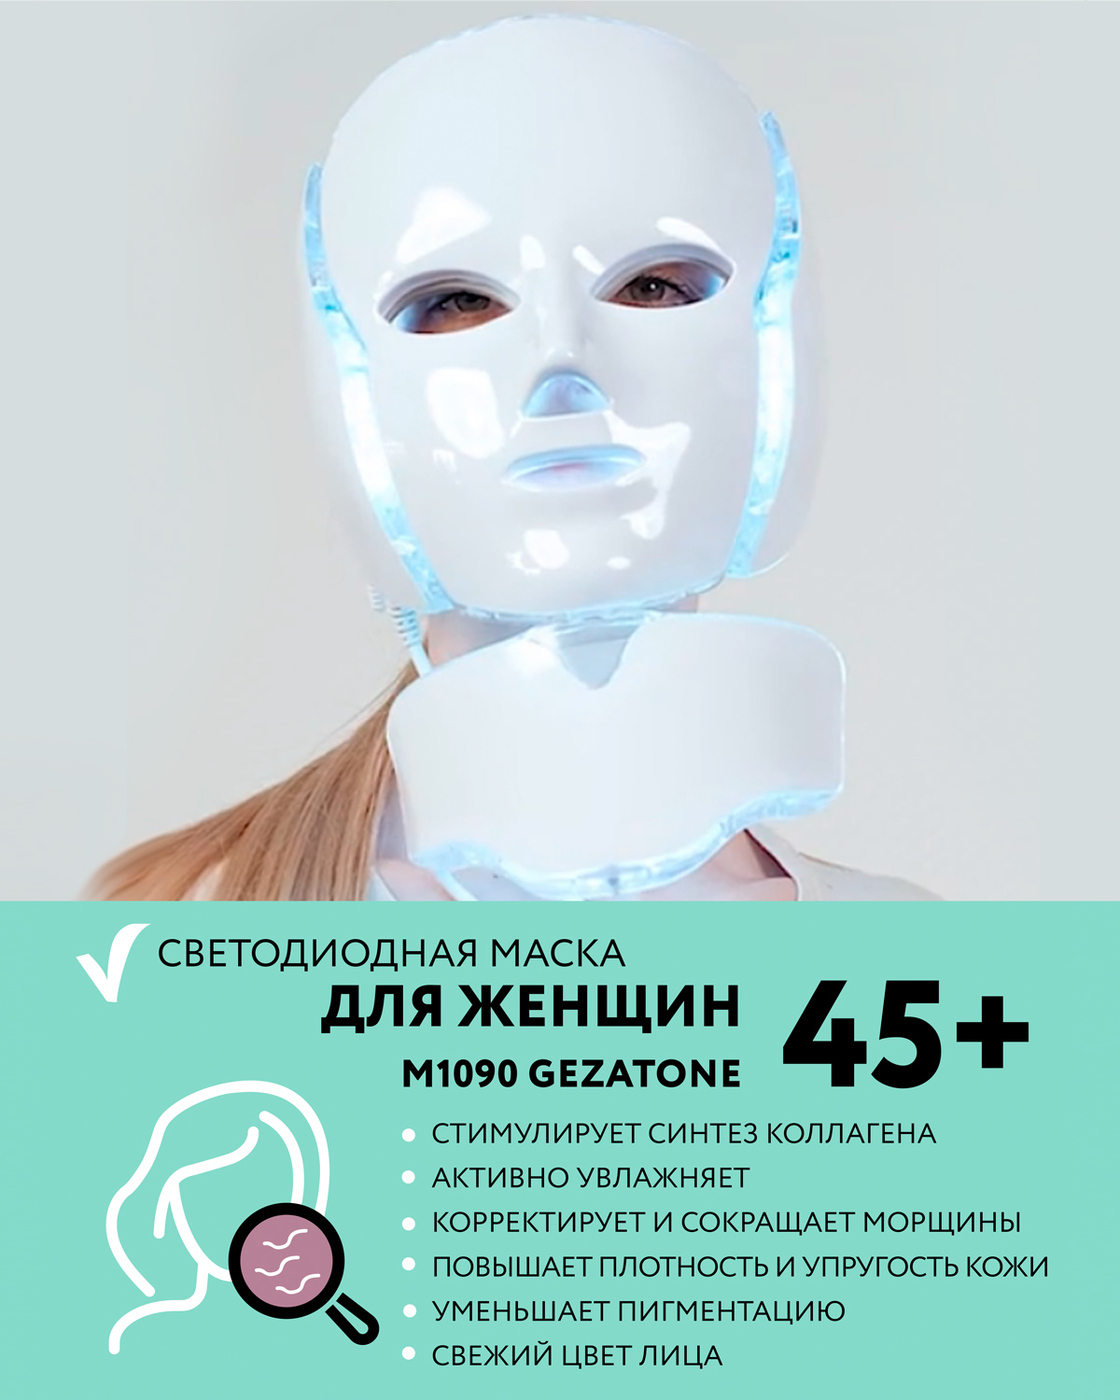 Светодиодная маска Гезатон. Gezatone светодиодная маска для омоложения кожи лица m 1090. Gezatone светодиодная маска led Mask. Маска косметическая для лица Life code. Светодиодная маска gezatone